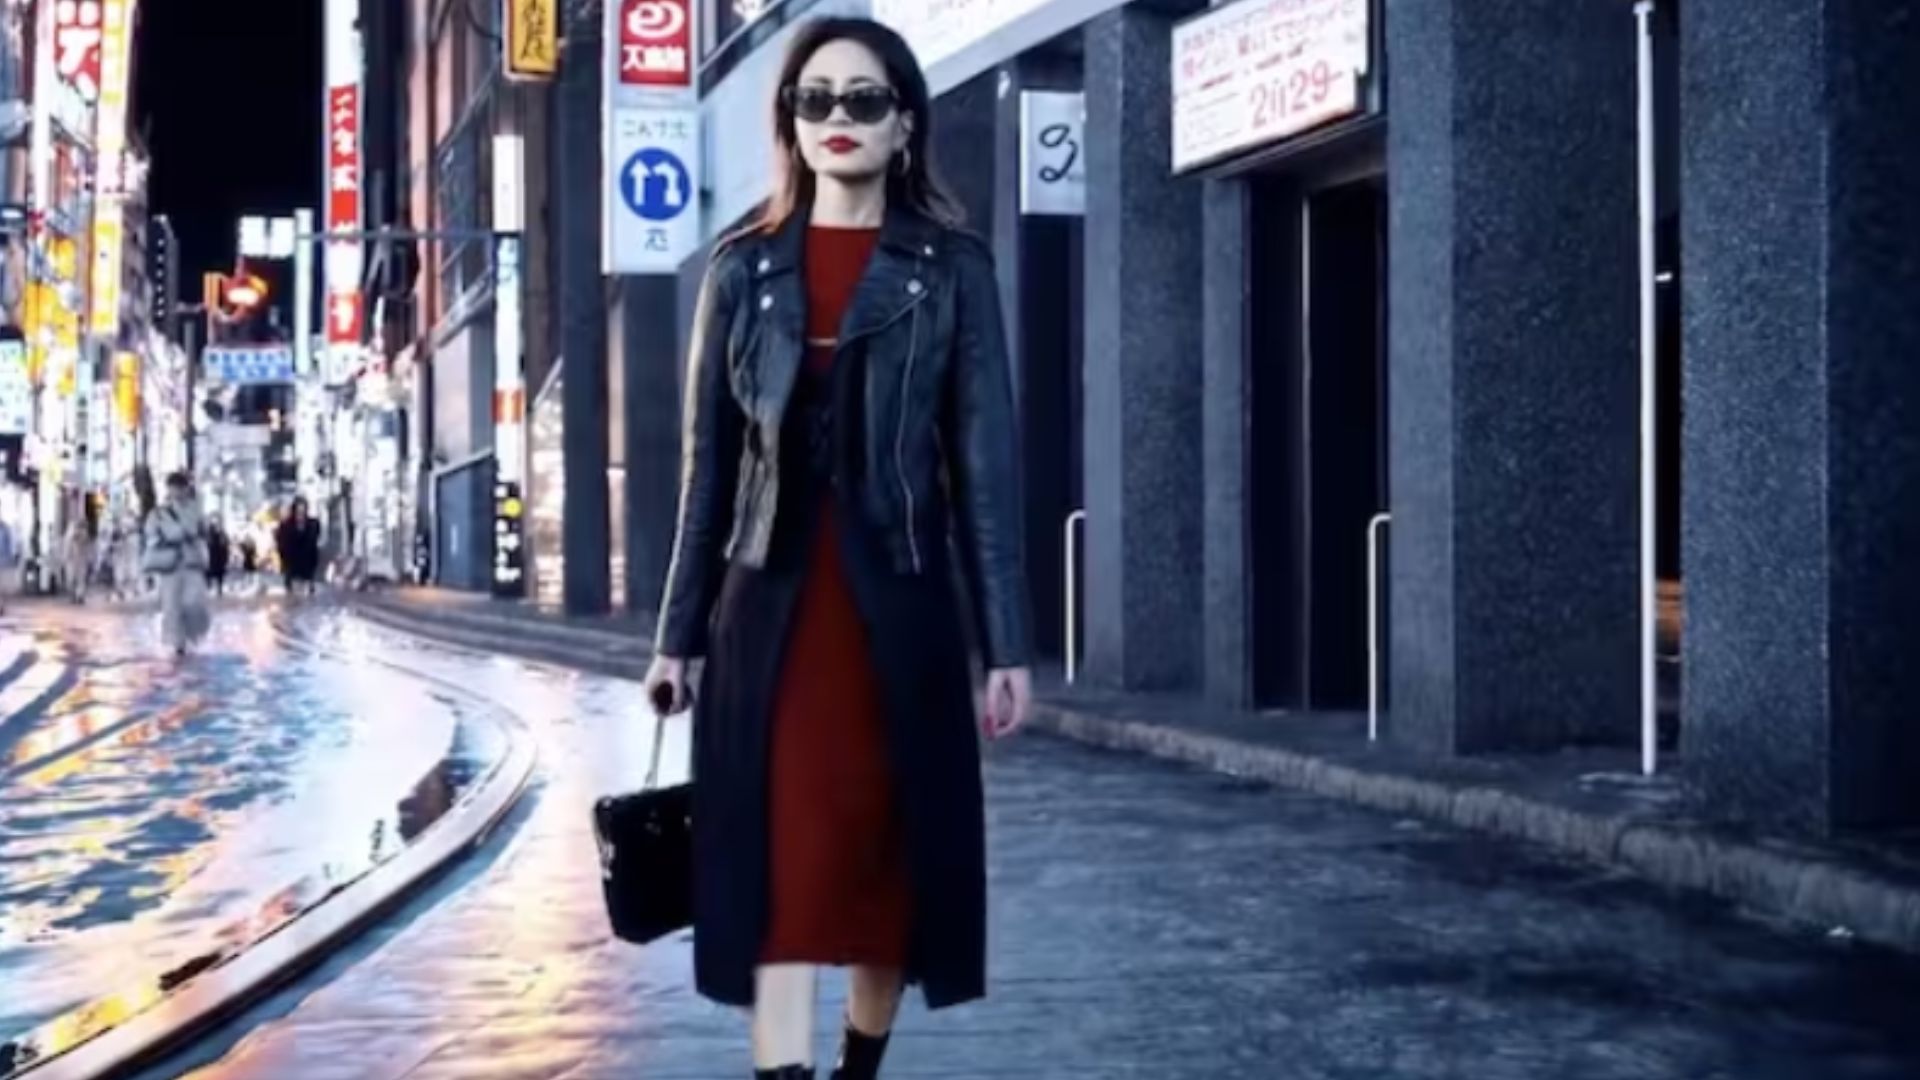 sora girl walking in the city